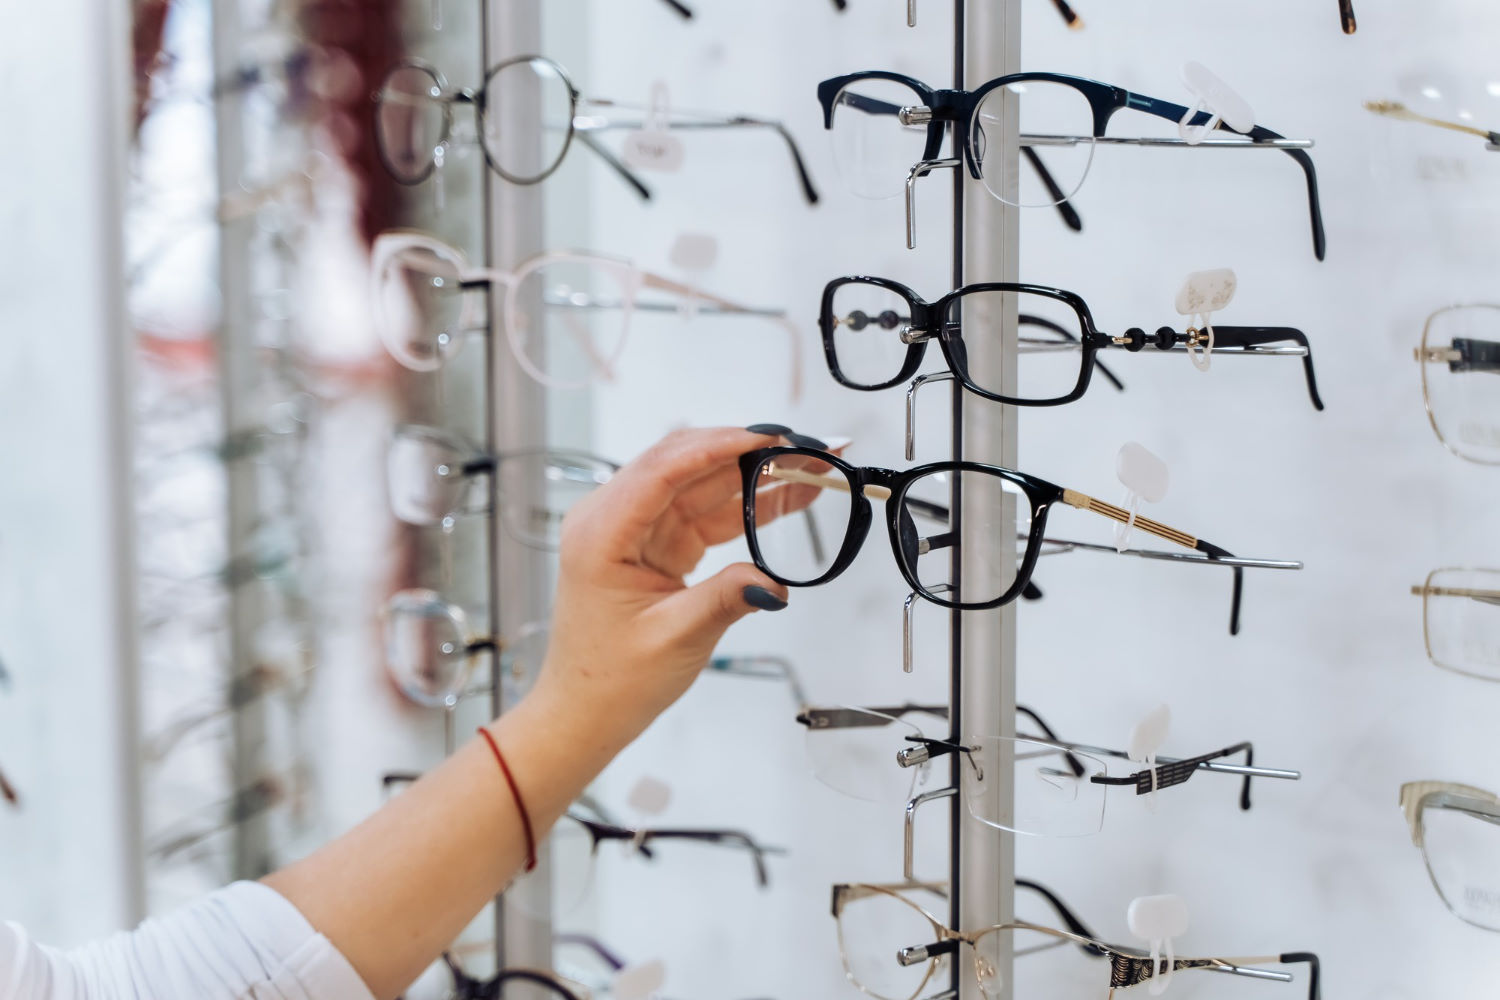 Wiele osób potrzebujących nowych okularów, udaje się prosto do salonu optycznego